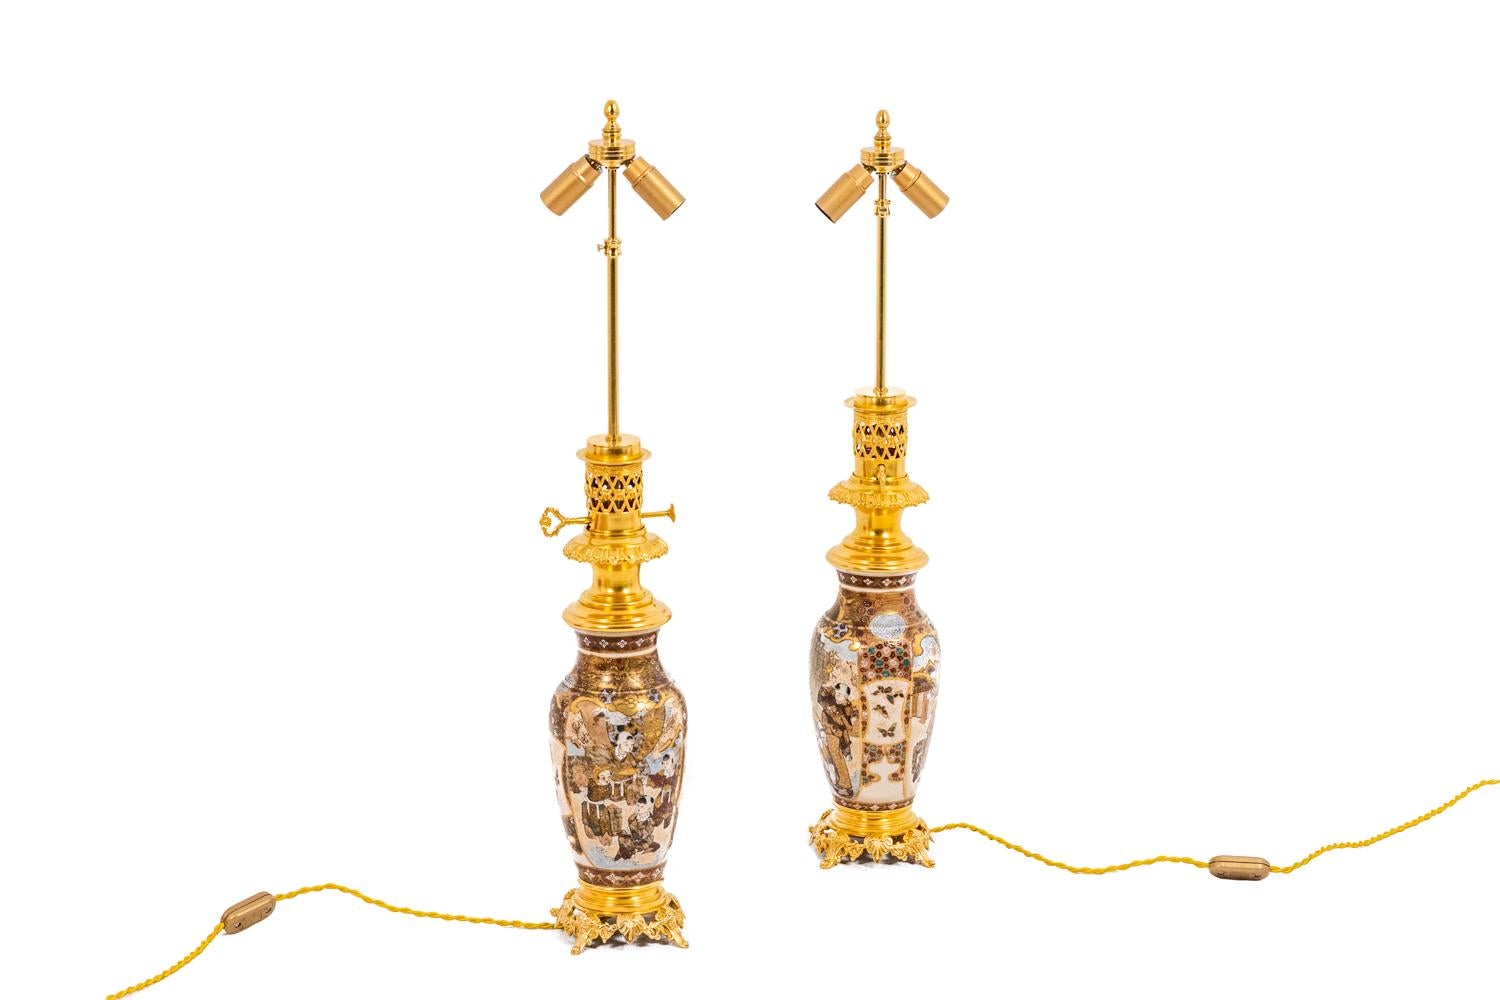 Paar feine Satsuma Steingutlampen, überwiegend aus Gold und vergoldeter Bronze. Eiförmige Form mit einem Hals in weißen Kartuschen auf goldenem Grund, geschmückt mit Schmetterlingen und Kindern. Durchbrochene und vergoldete Bronzen in einem